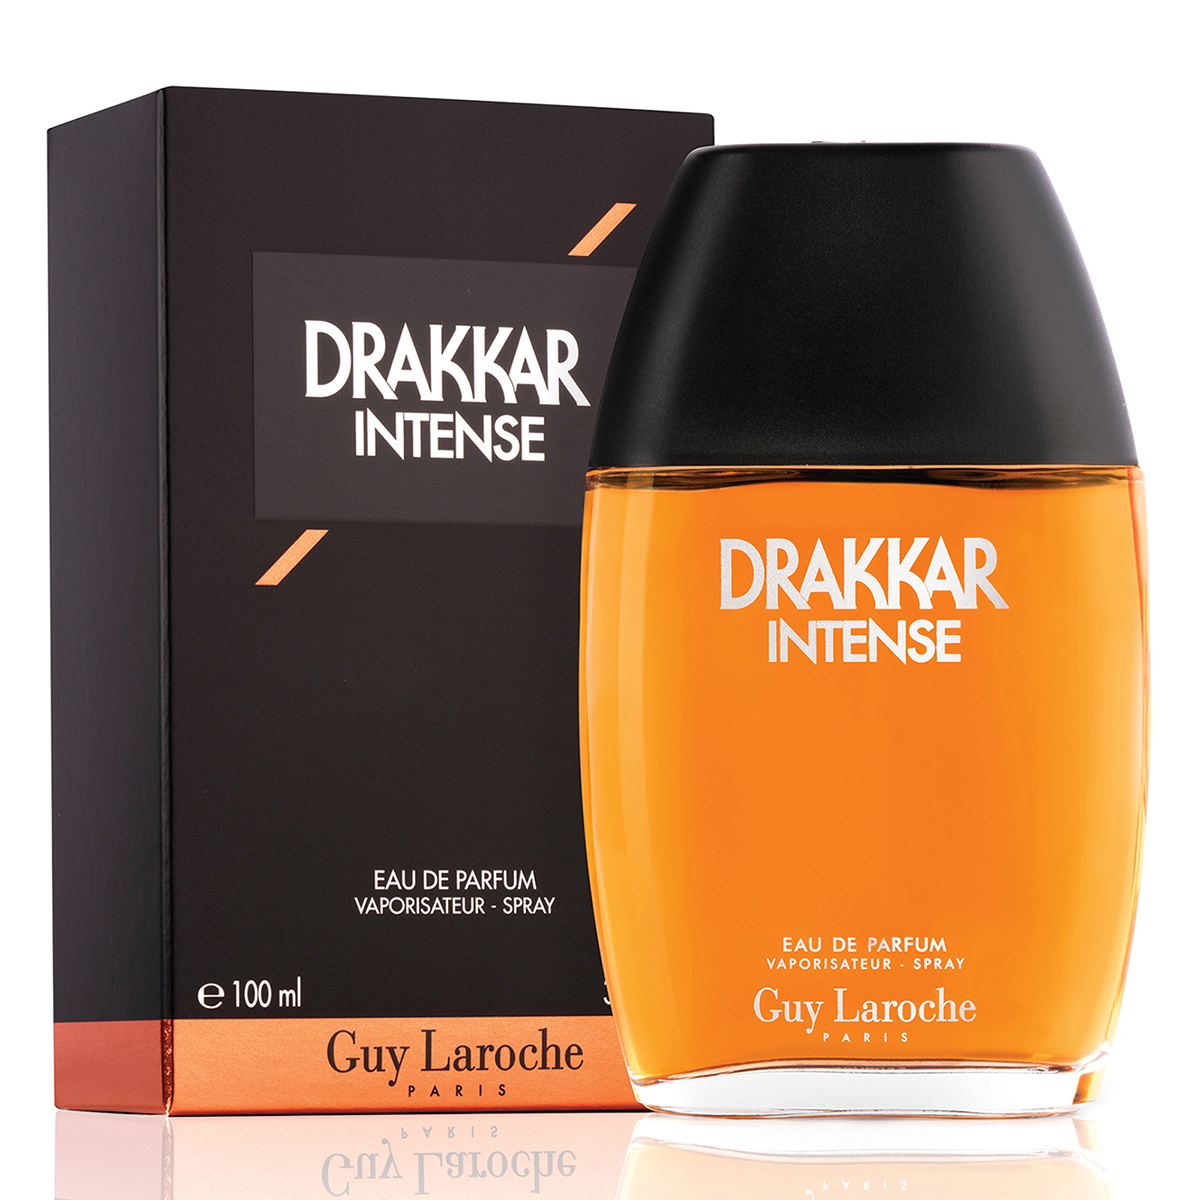 Drakkar Intense Guy Laroche Paris Eau de Parfum for Men